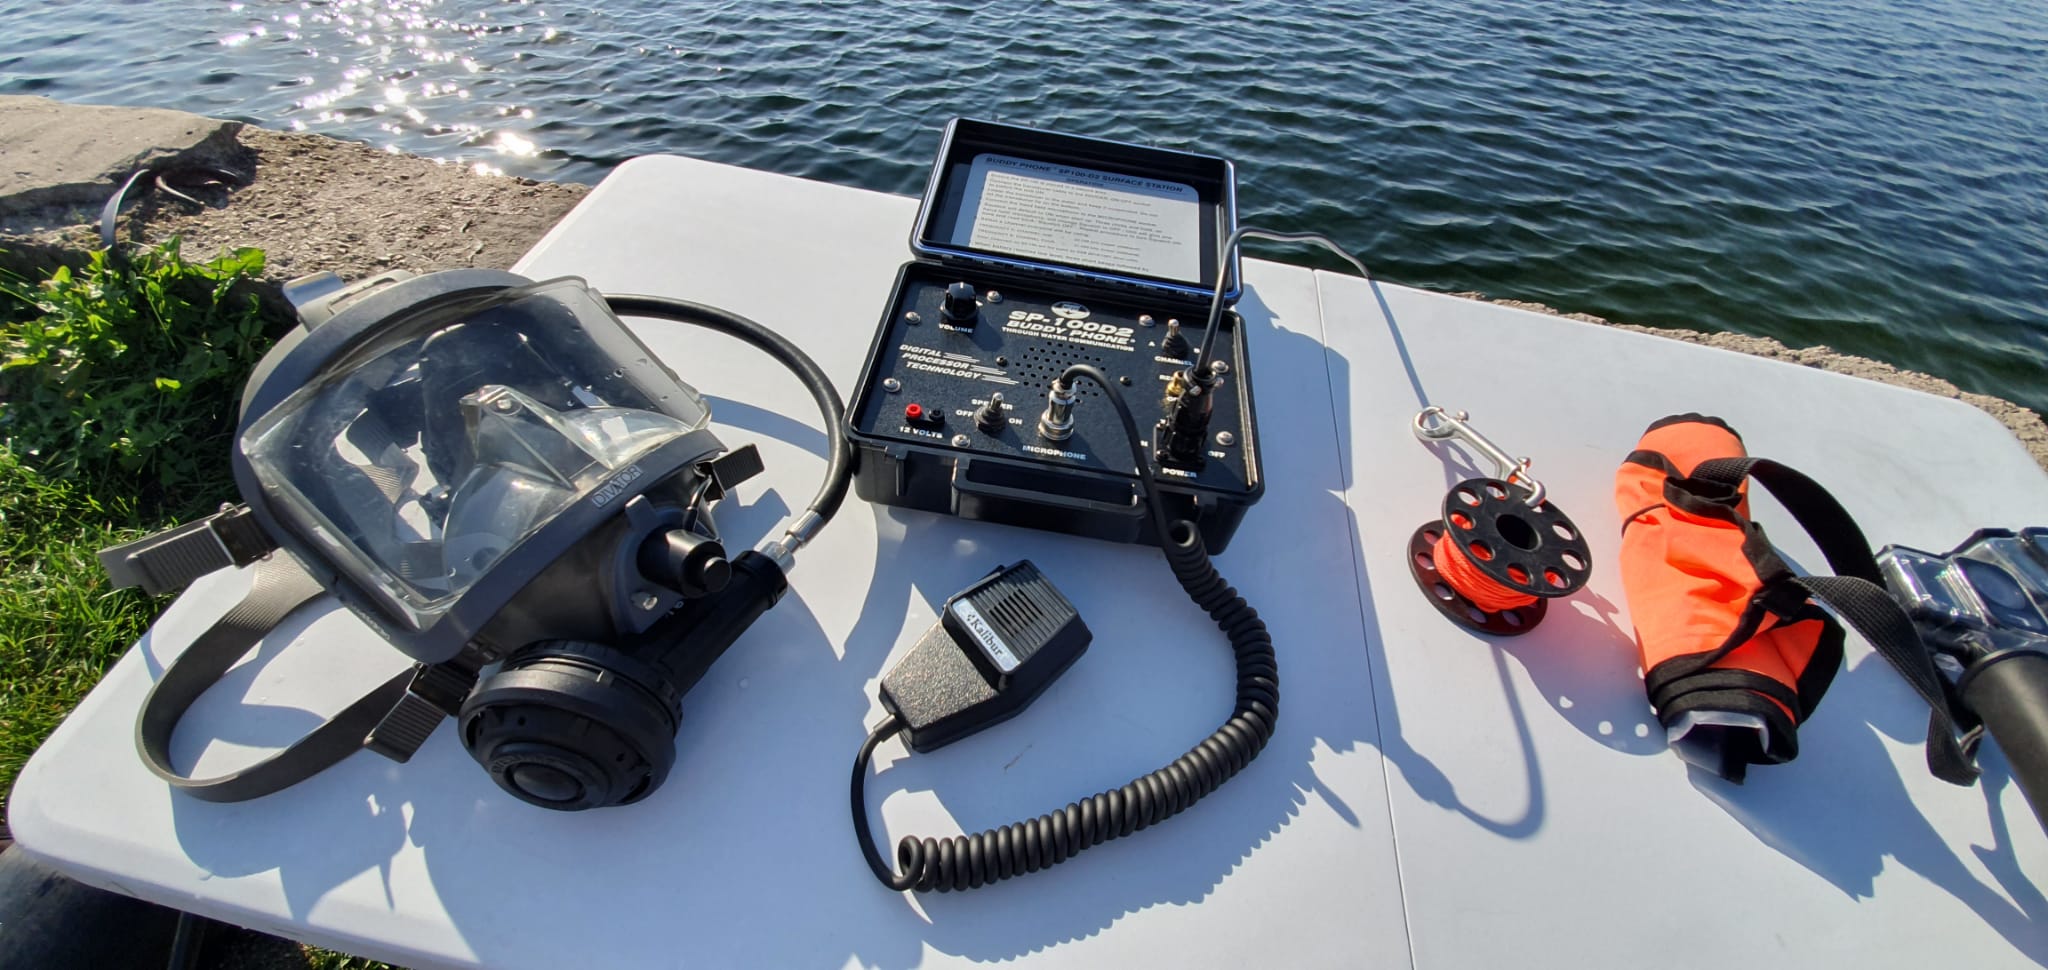 Kommunikationsausrüstung bei Unterwasserarbeiten